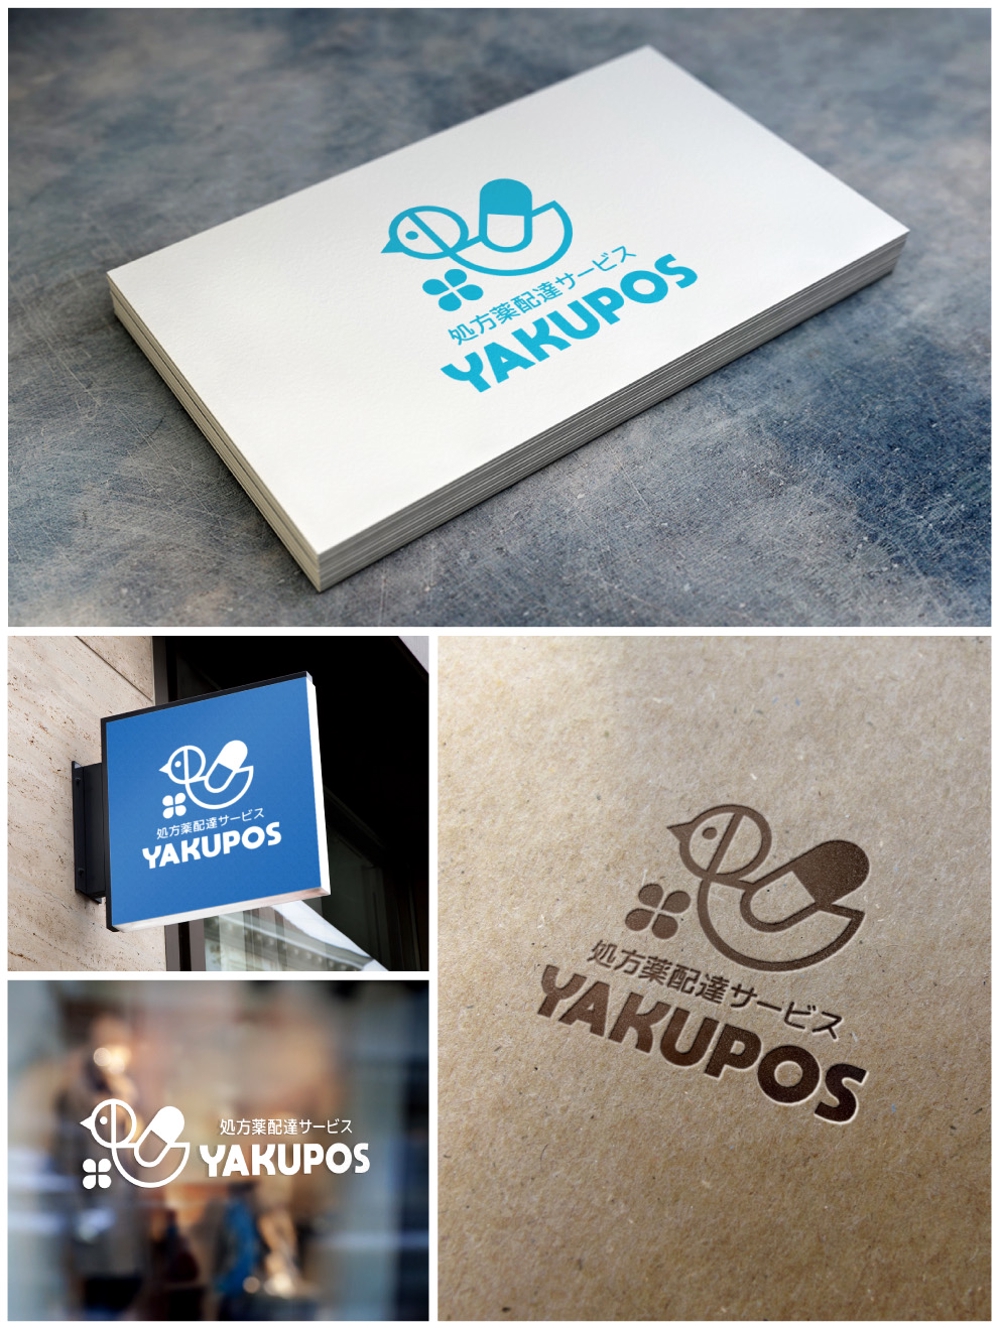 処方薬配達サービス「Yakupos」のロゴ